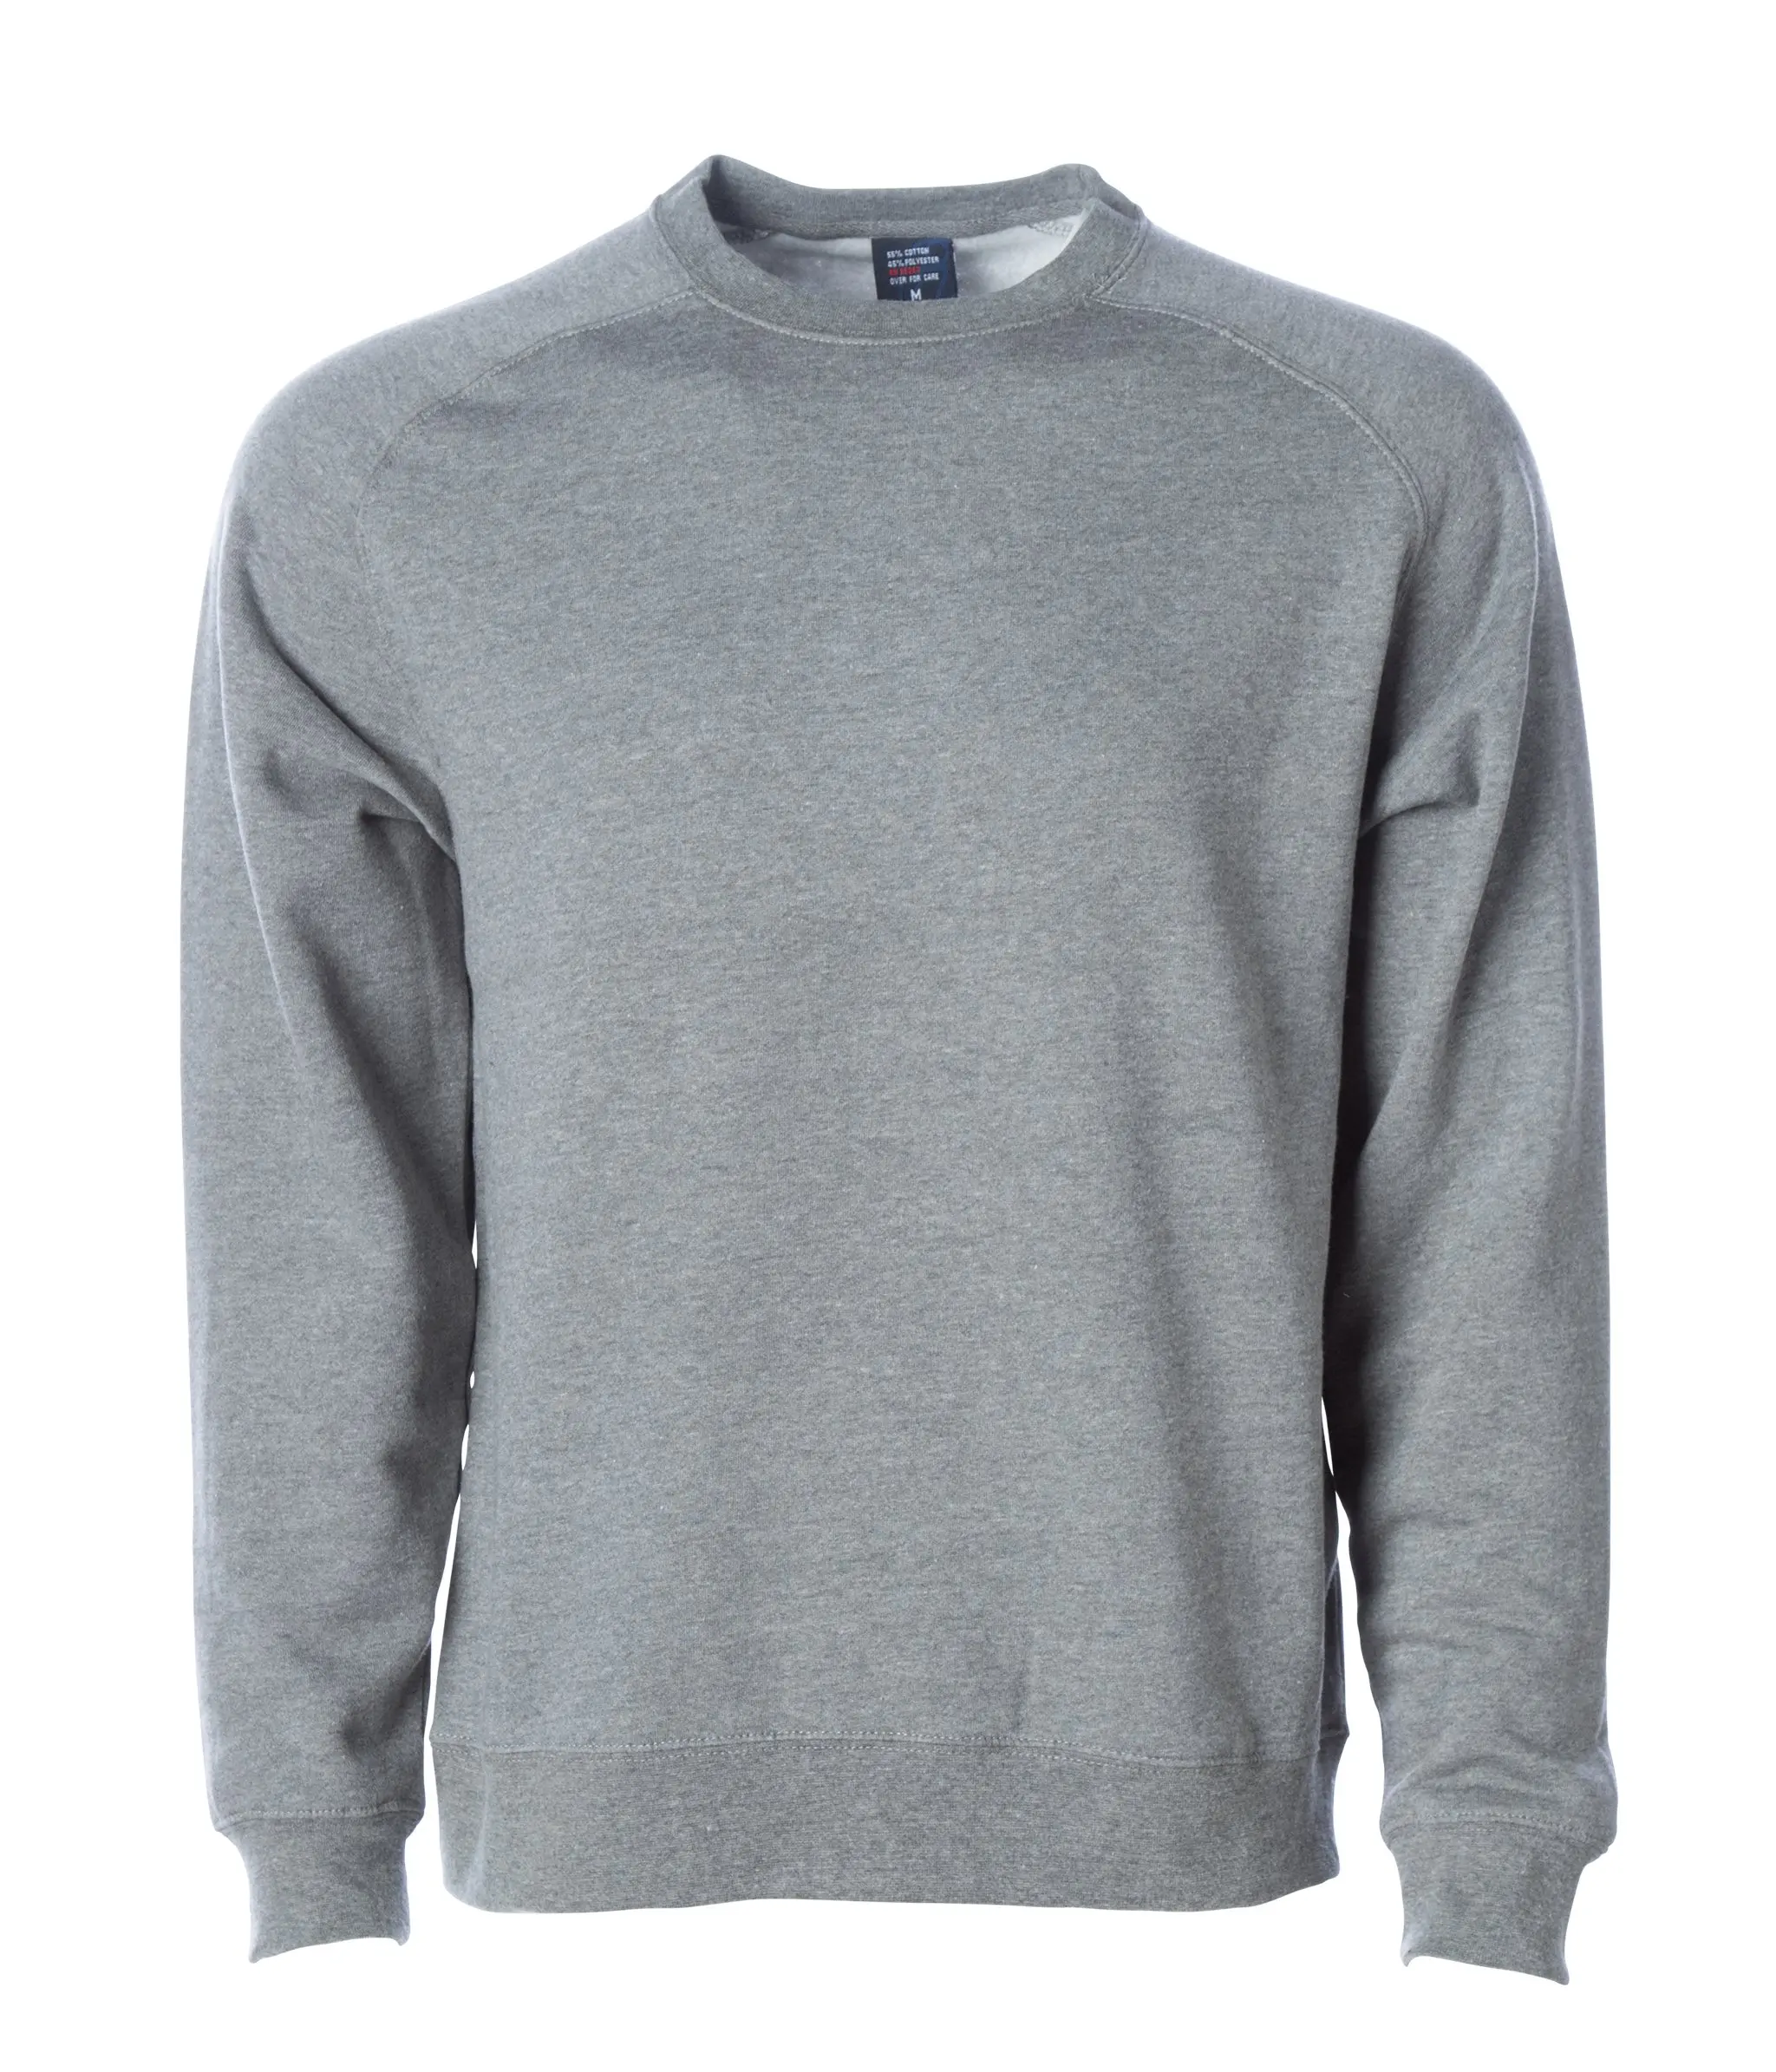 Men's Pure Cotton Crew Neck Sweatshirt Jumper Sweater Pullover Top 